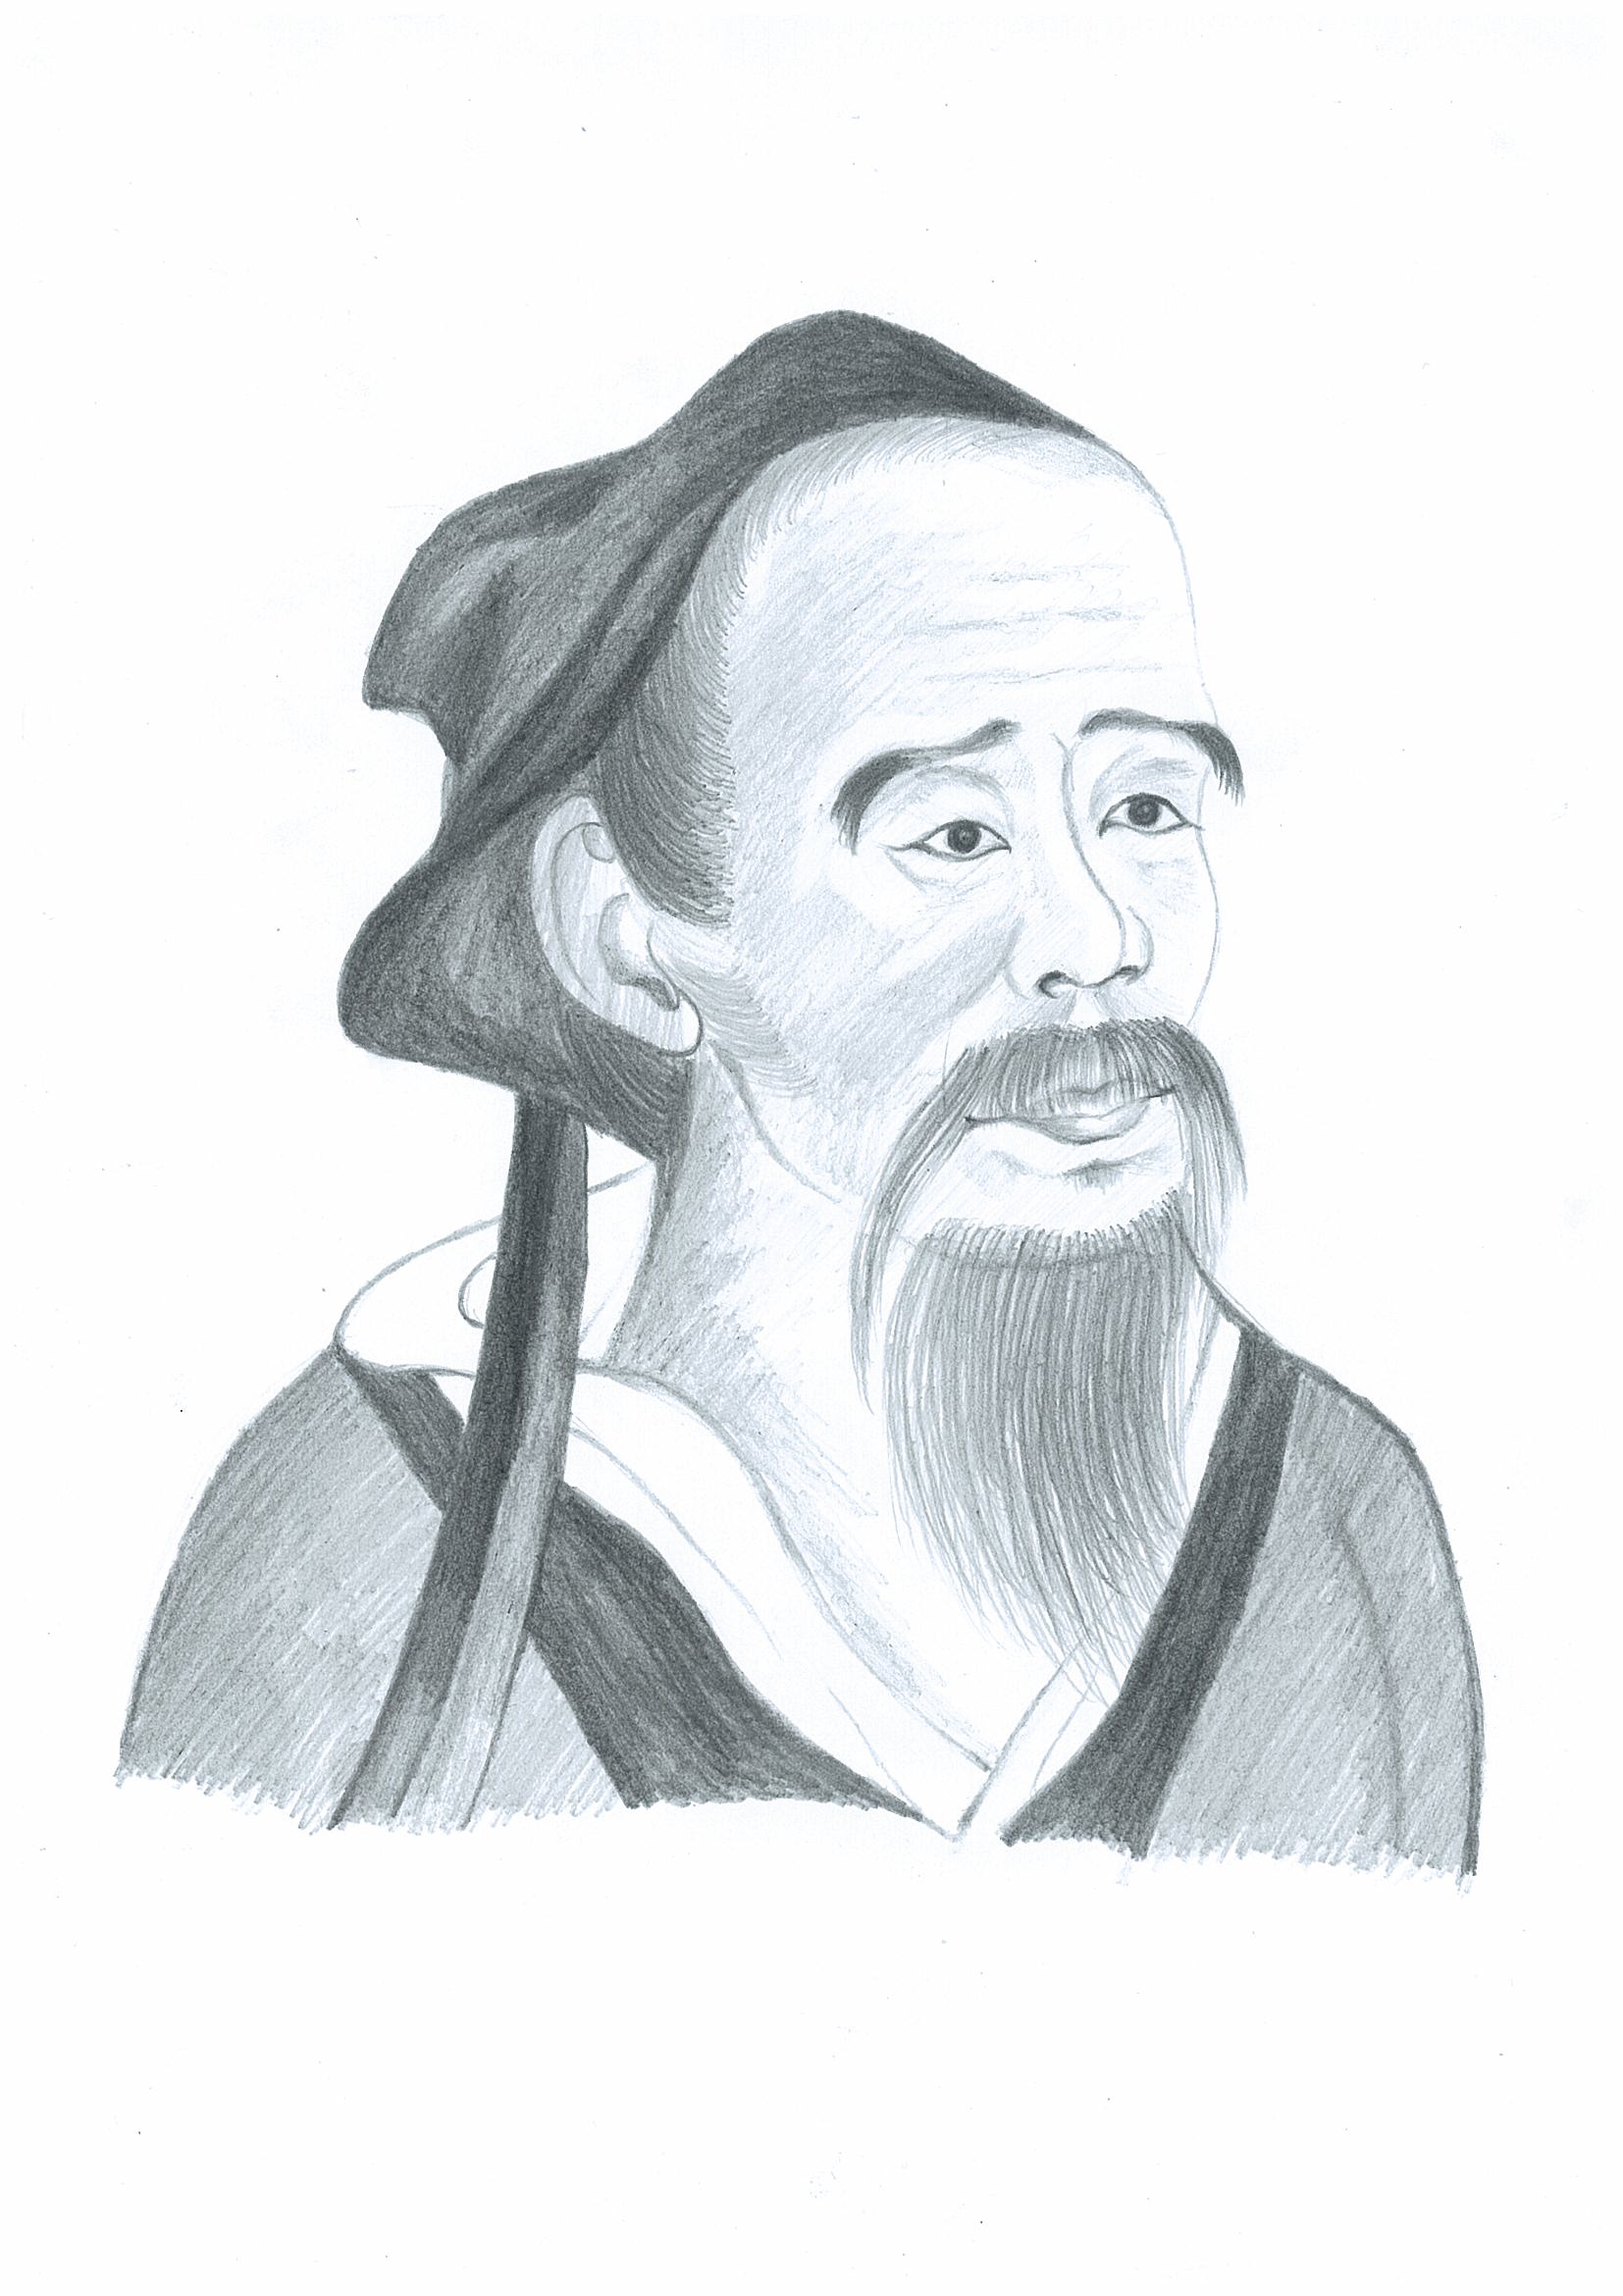 Хуа То, основоположник хирургии в Китае Иллюстратор: Юань Фан. Великая Эпоха